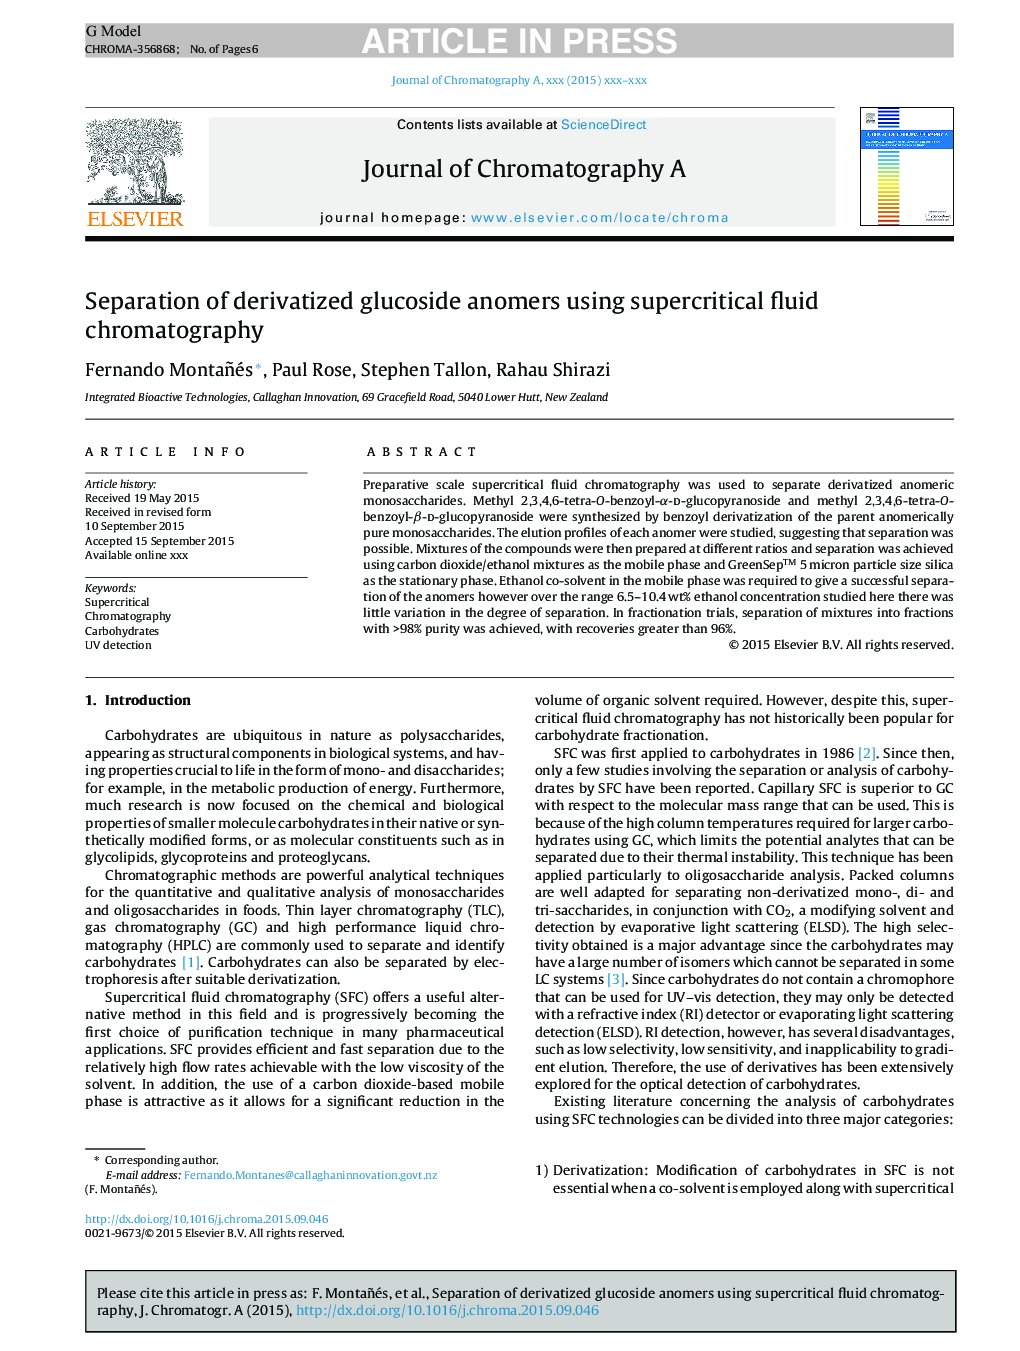 جداسازی آنومرهای گلوکوزید مشتق شده با استفاده از کروماتوگرافی سیال فوق کریتیک 